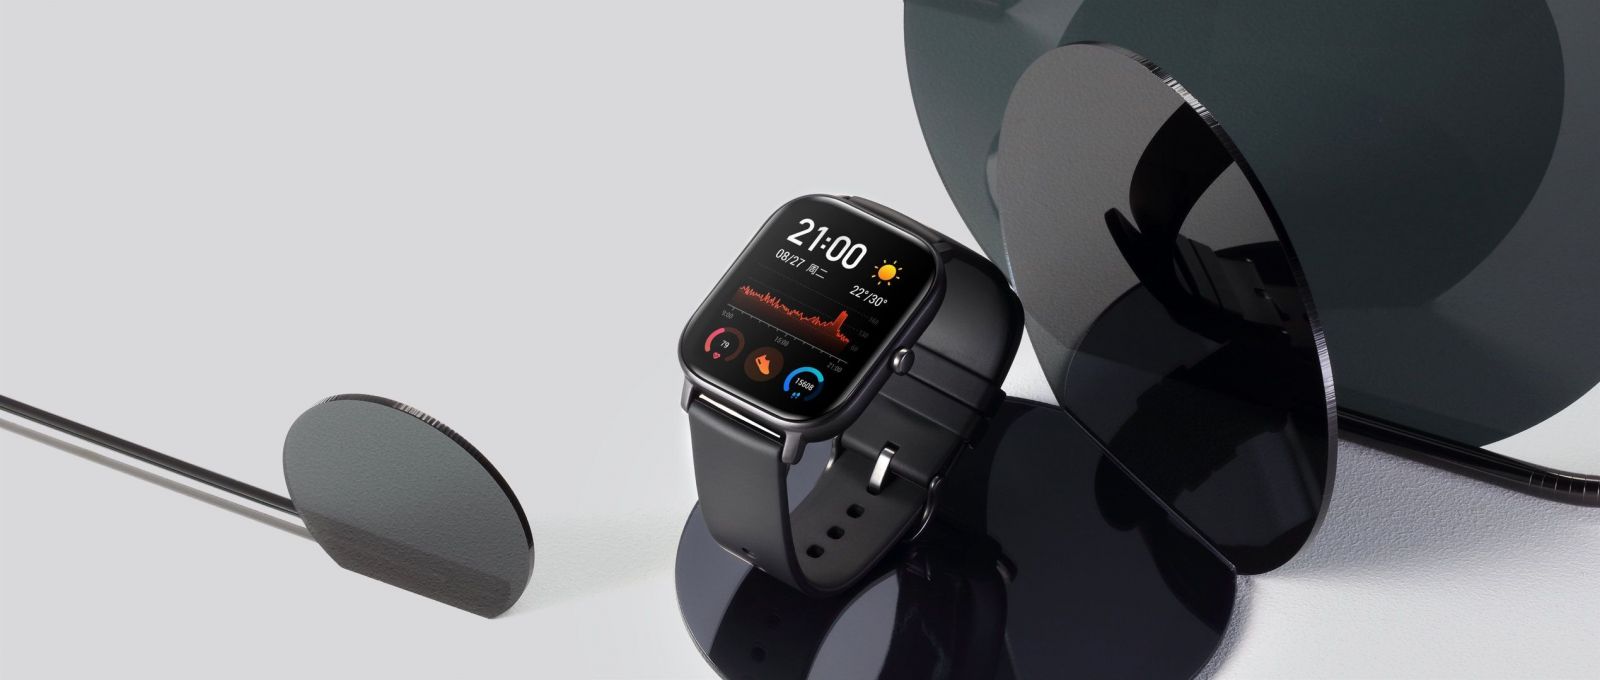 Xiaomi dostane na slovenskí trh nové smart hodinky. Chcú osloviť aktívnych a konkurujú cenou